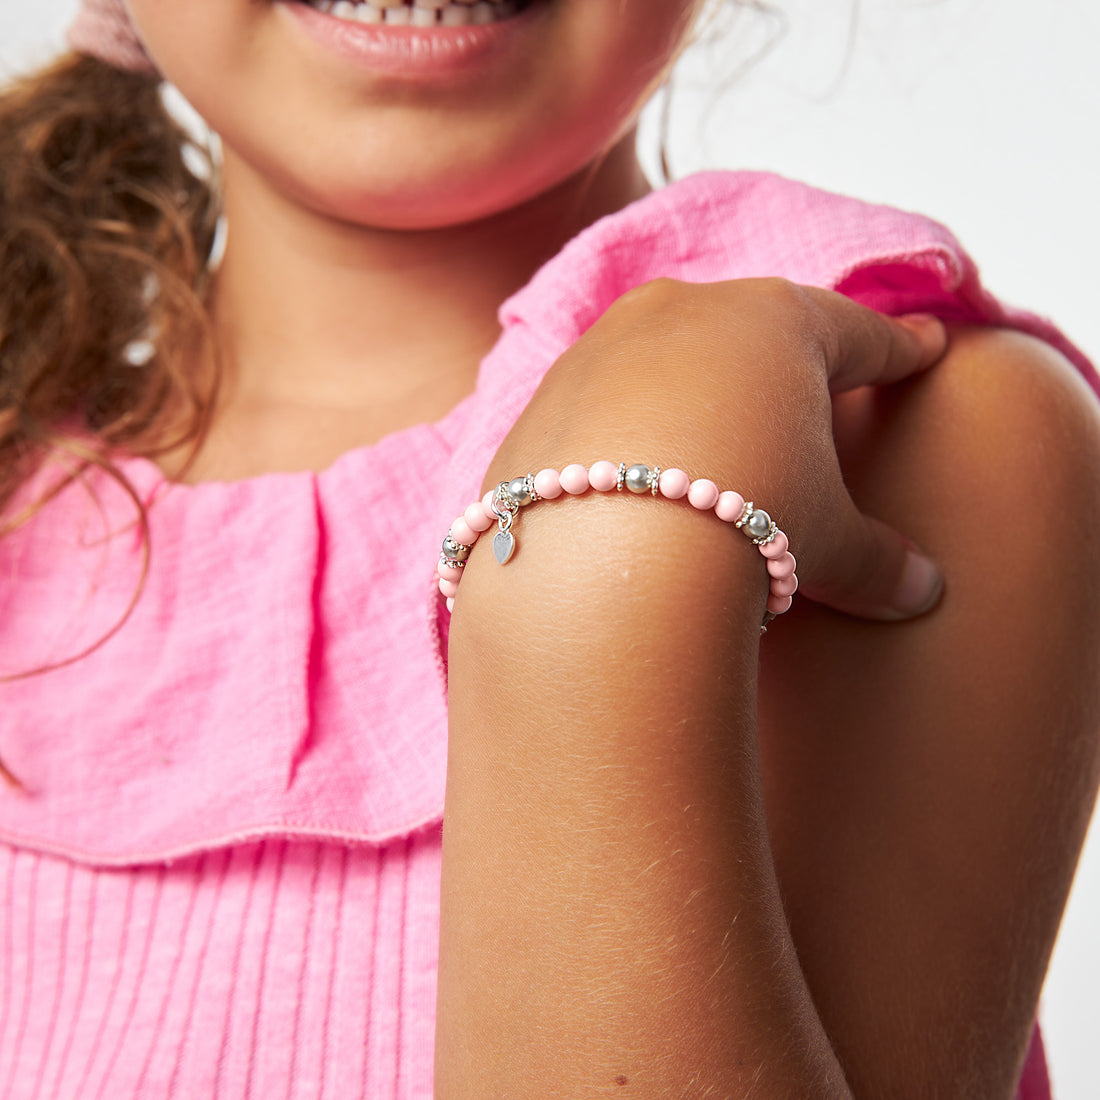 Little Girl Toddler Sterling Silver Heart charm Bracelet